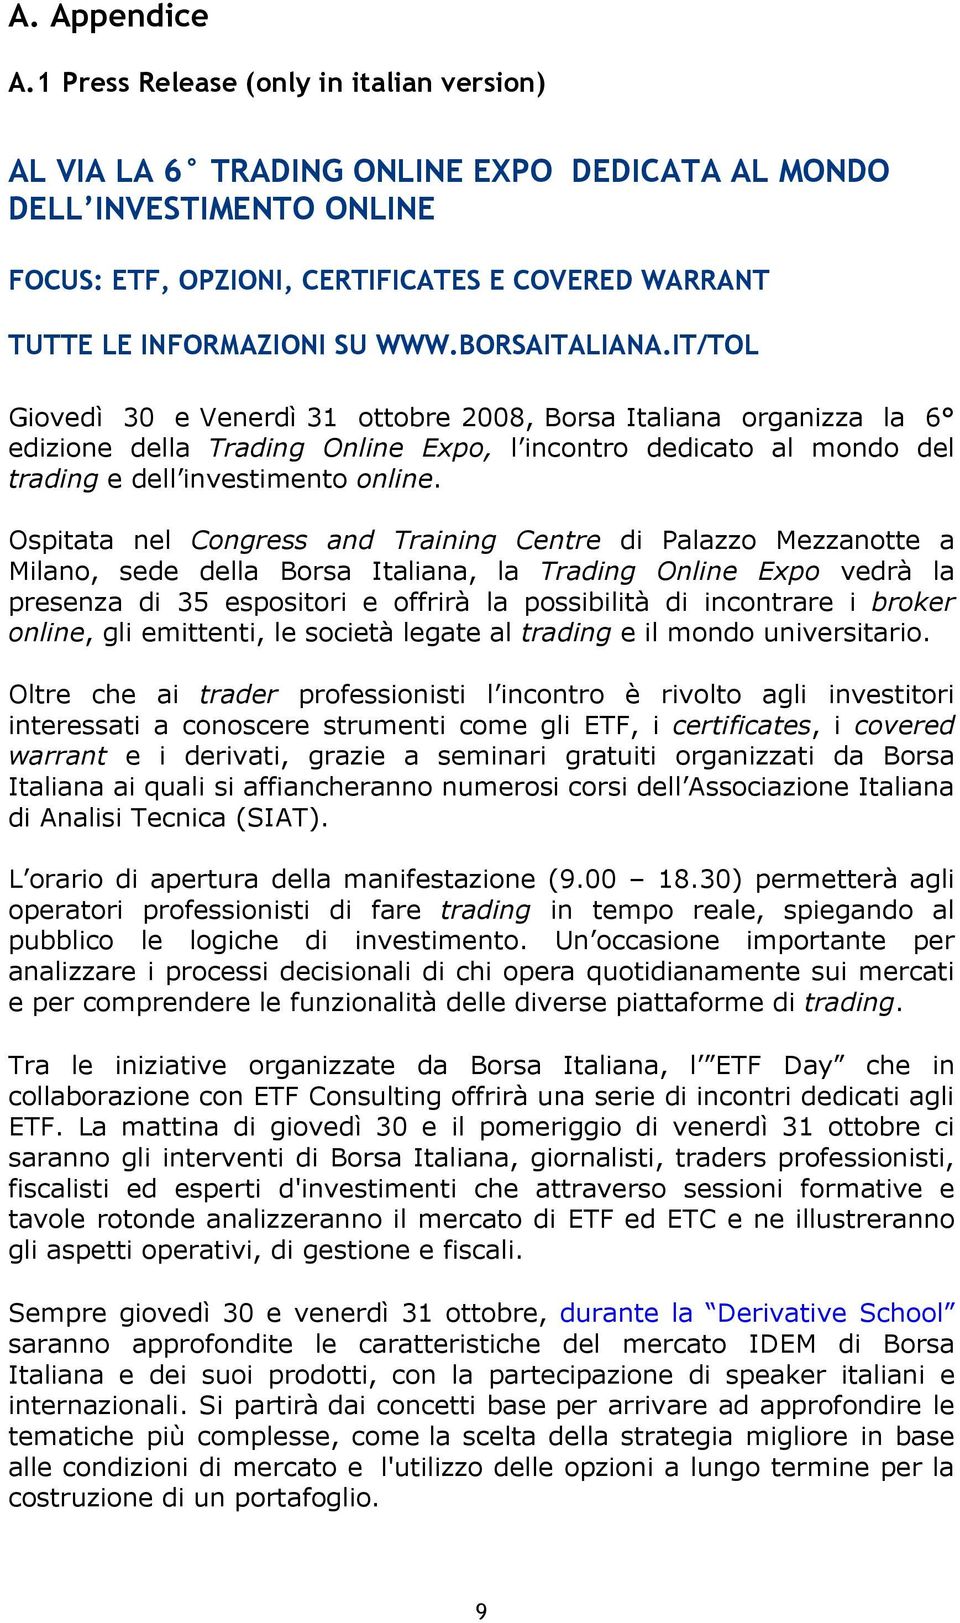 BORSAITALIANA.IT/TOL Giovedì 30 e Venerdì 31 ottobre 2008, Borsa Italiana organizza la 6 edizione della Trading Online Expo, l incontro dedicato al mondo del trading e dell investimento online.